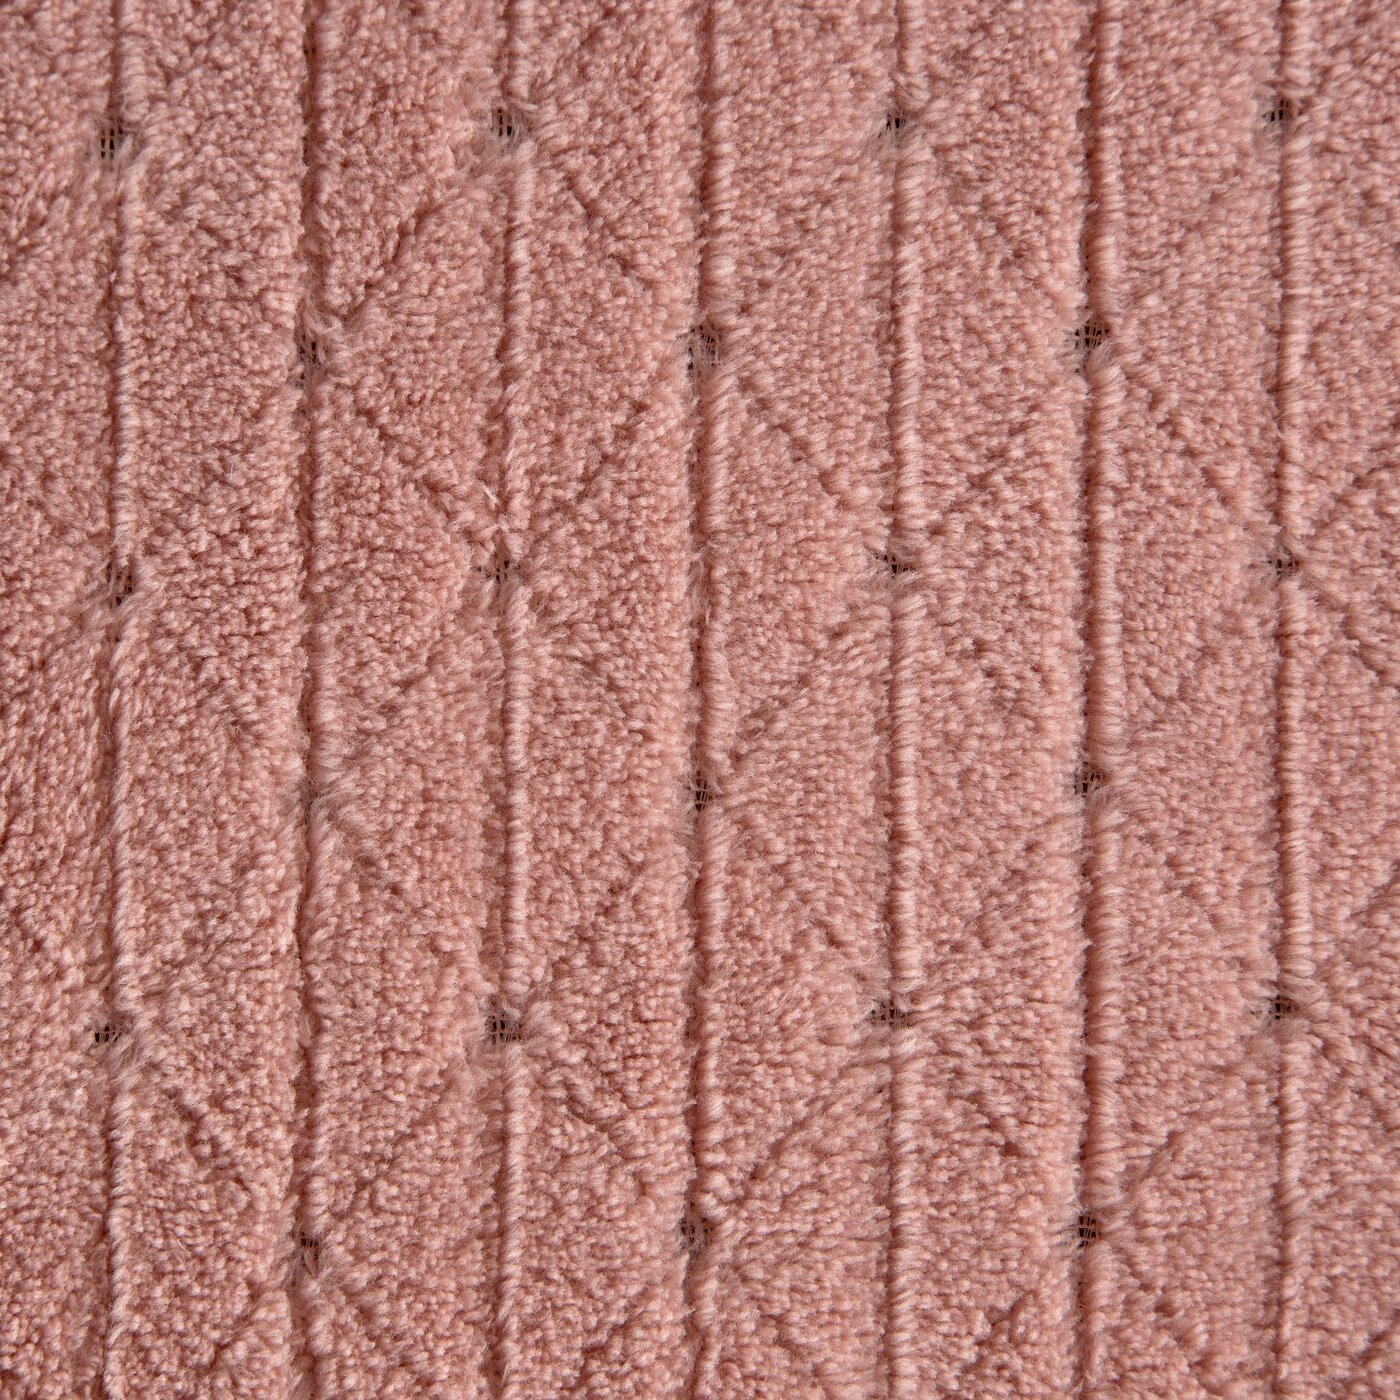 Pătură moale și plăcută la atingere, cu model în relief roz CINDY 4 Perdele de Poveste